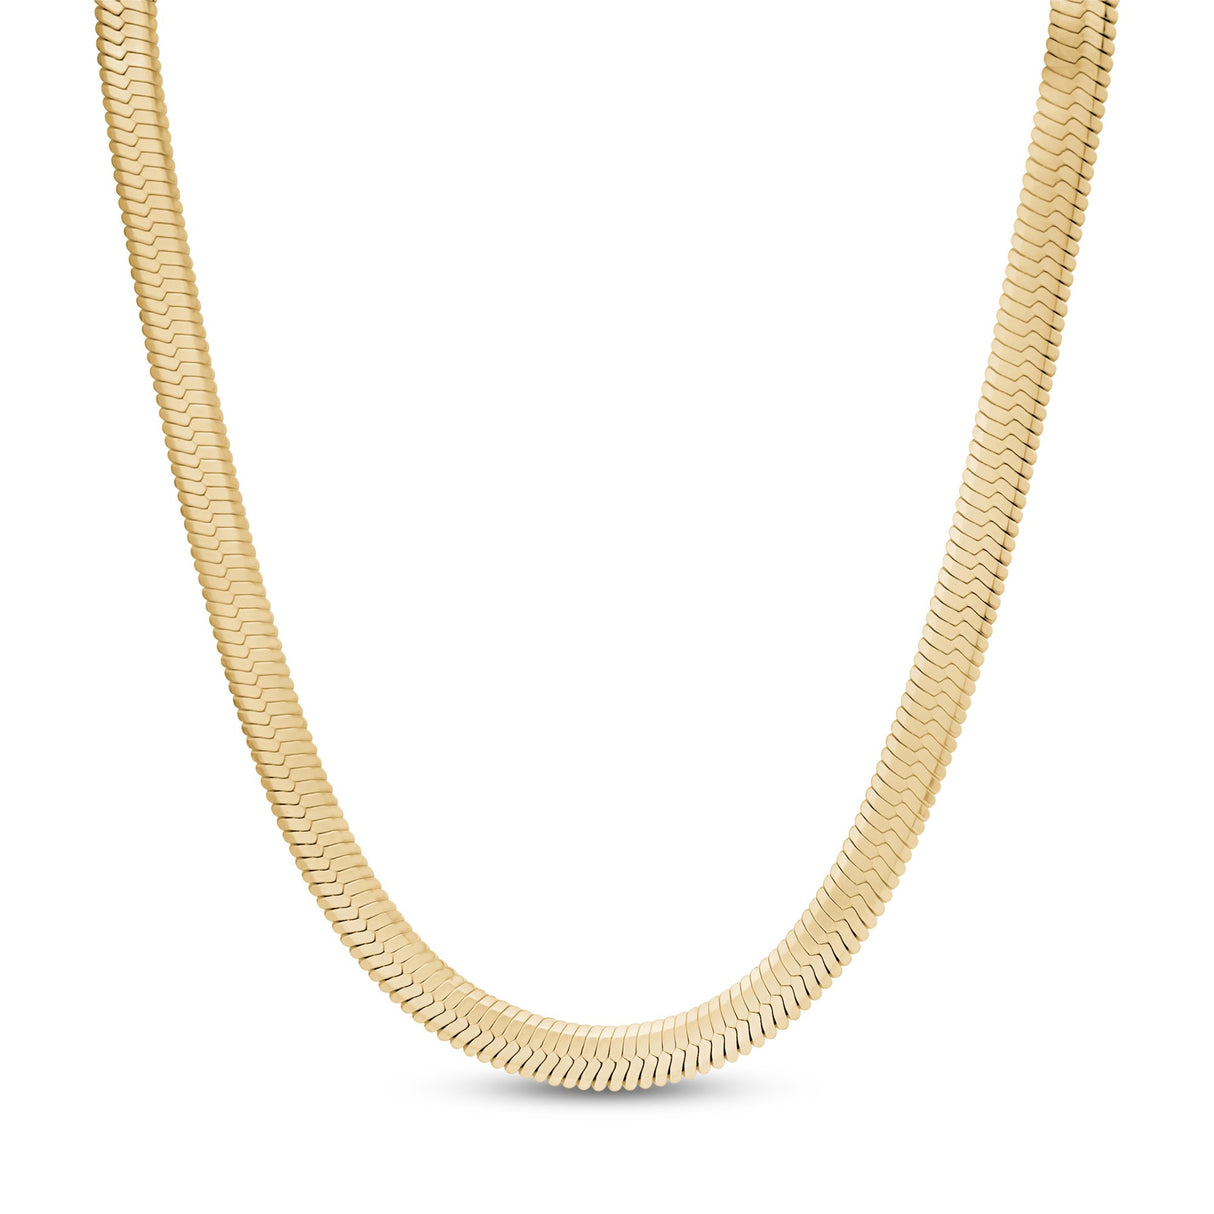 Collares de mujer - Cadena de espiga de oro de 6 mm